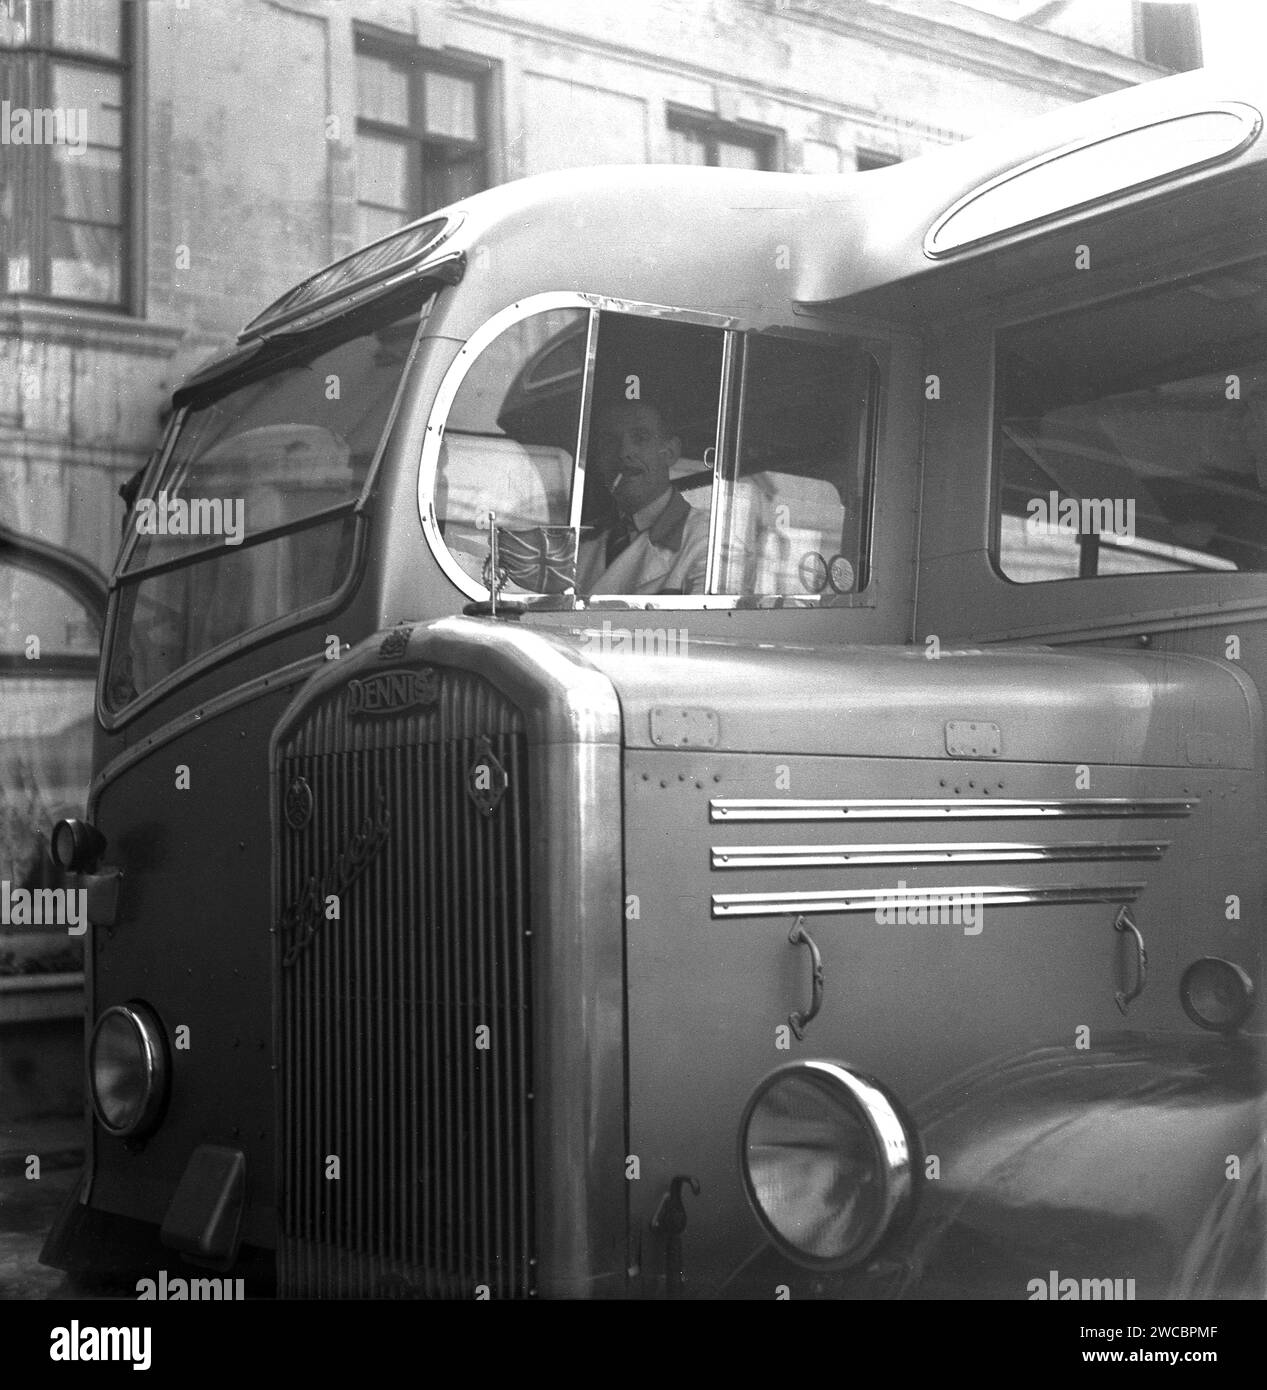 1950, historique, vue de la calandre et de la cabine avec chauffeur d'un autocar ou d'un bus Dennis, un Dennis Lancet III avec corps Duple, Bruxelles, Belgique. Un raccord jack est sur le capot, avec les emblèmes RAC et TCS sur la calandre. Banque D'Images